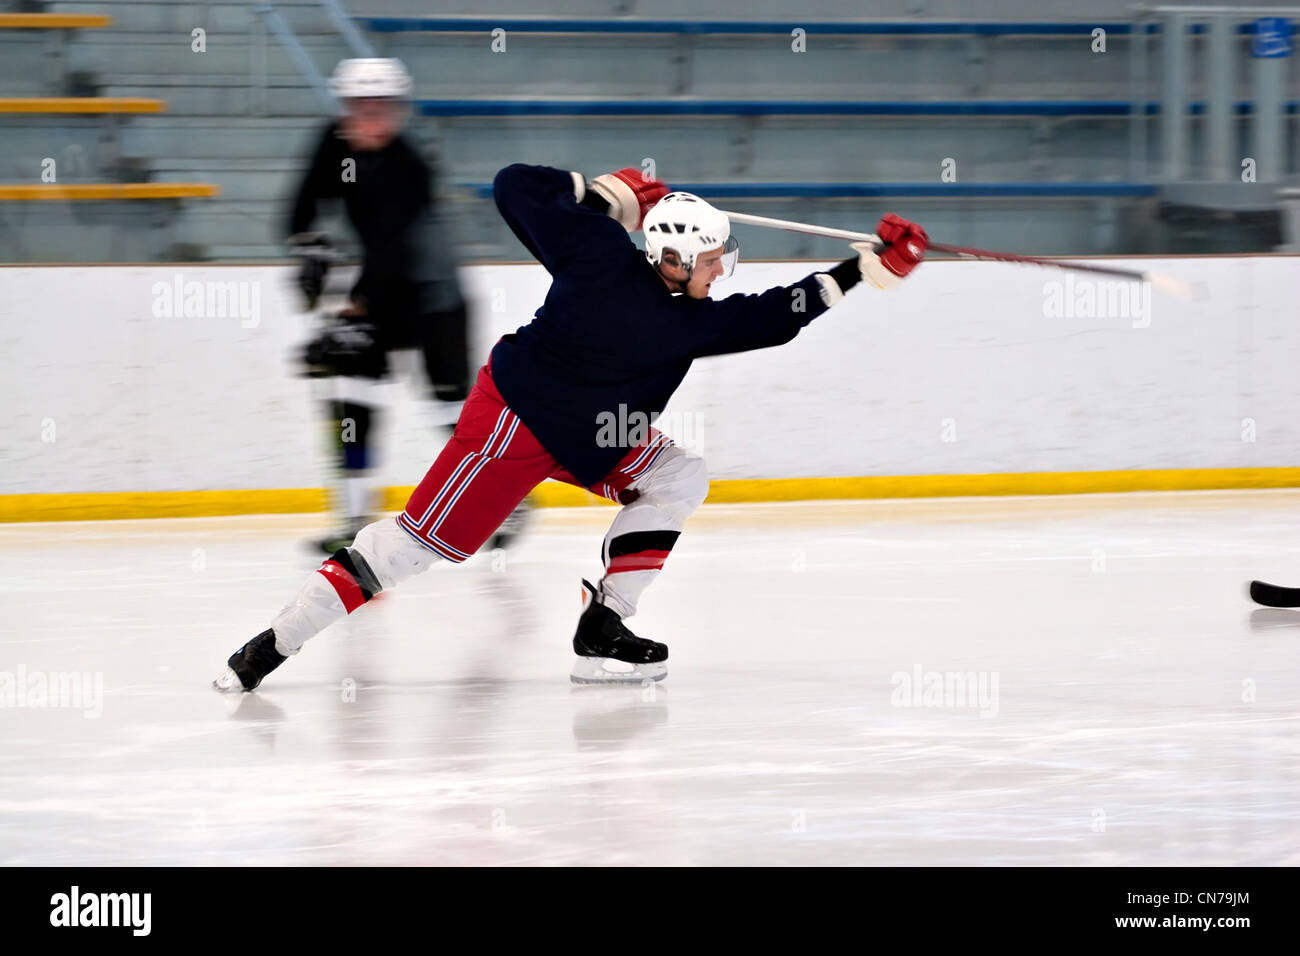 Ein Eishockey-Spieler den Puck zu schießen, als er das Eis hinunter Geschwindigkeiten. Leichte Bewegungsunschärfe. Stockfoto